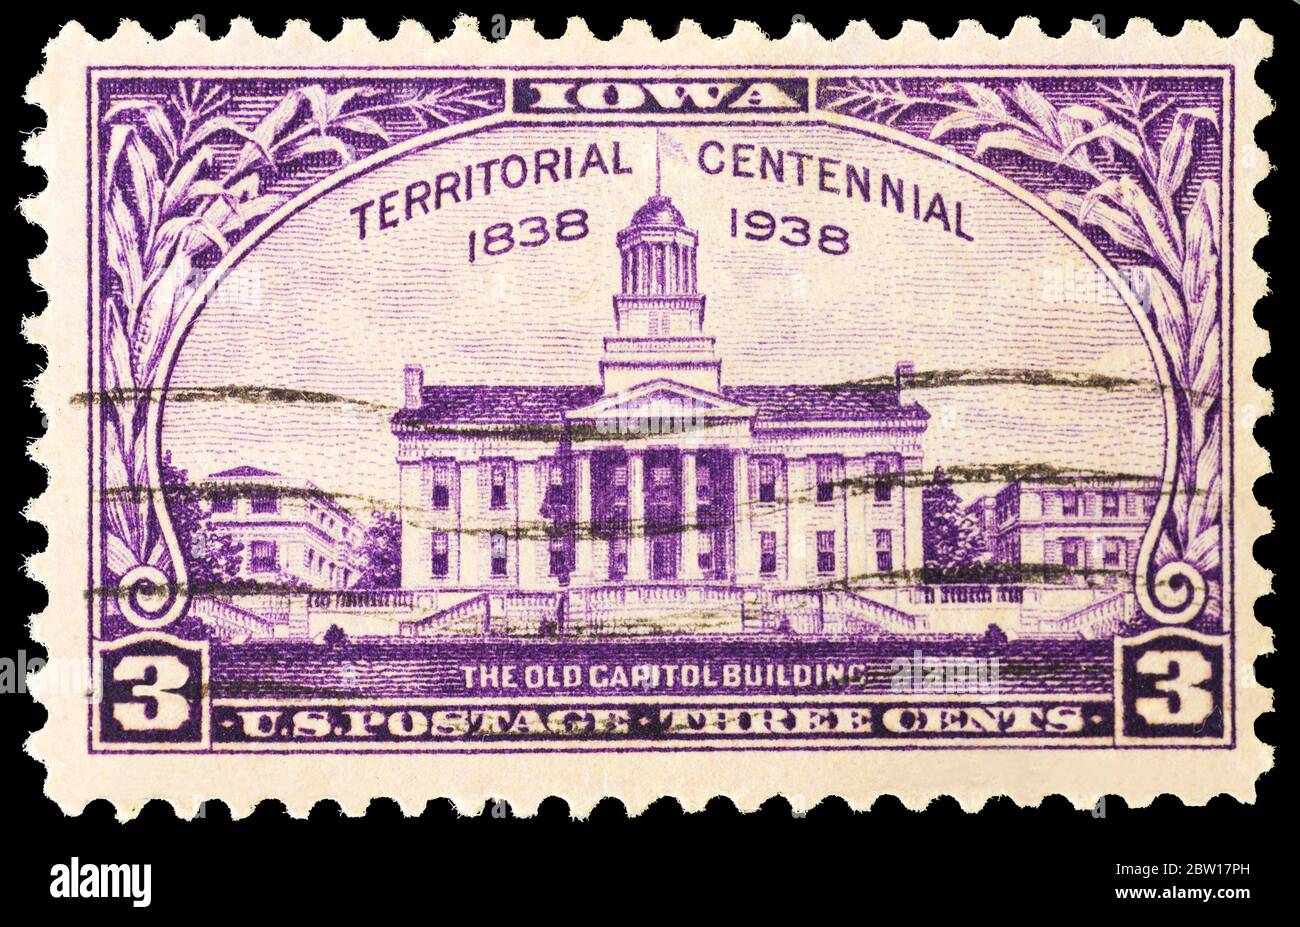 Eine US-Briefmarke von 1938 zum Gedenken an die Iowa Territory Centennial. Das Bild zeigt das alte Kapitolgebäude. Stockfoto